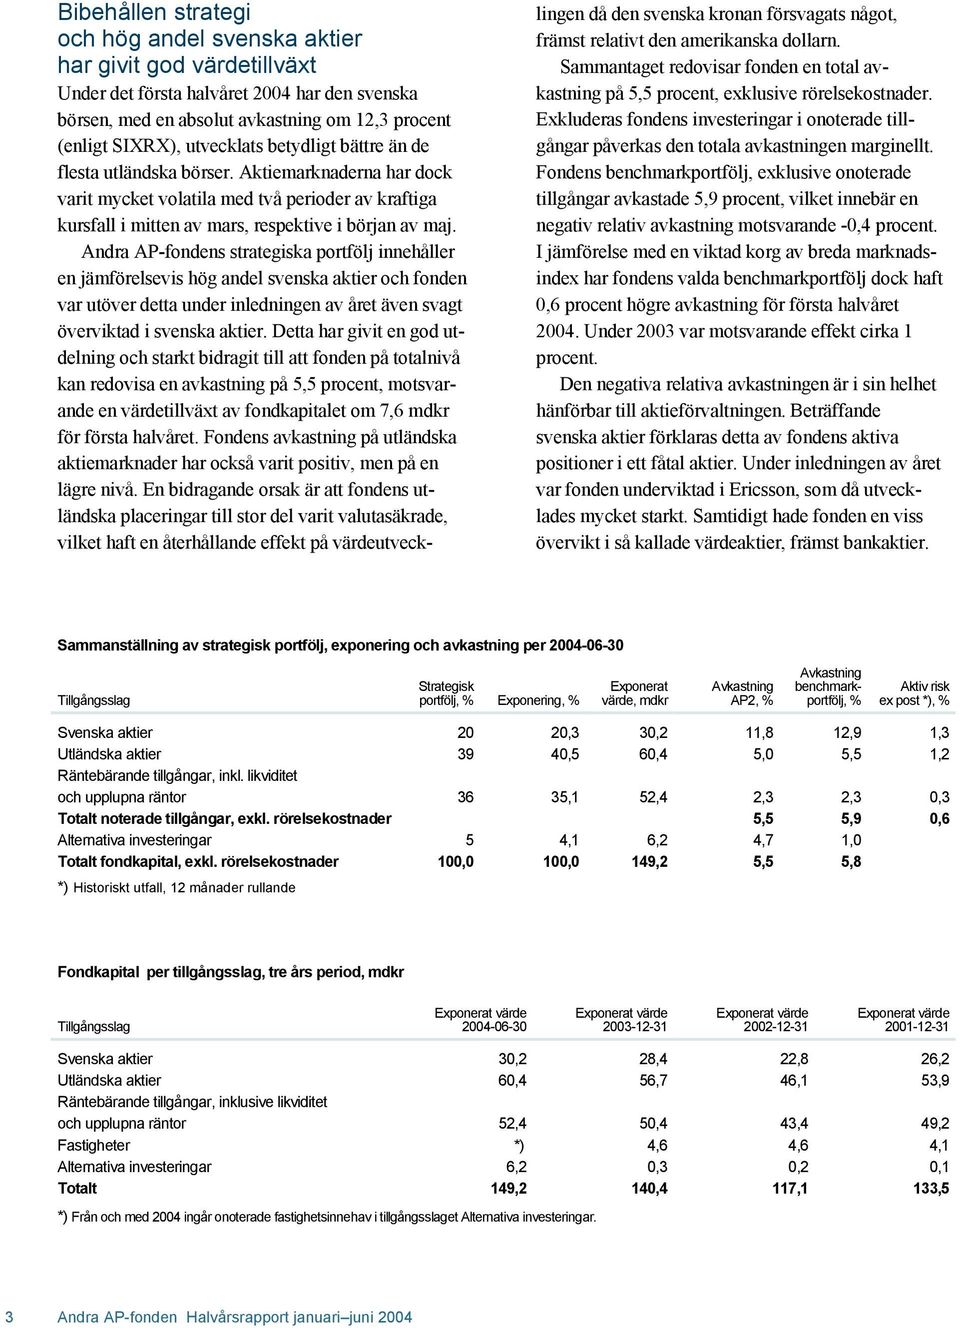 Andra AP-fondens strategiska portfölj innehåller en jämförelsevis hög andel svenska aktier och fonden var utöver detta under inledningen av året även svagt överviktad i svenska aktier.